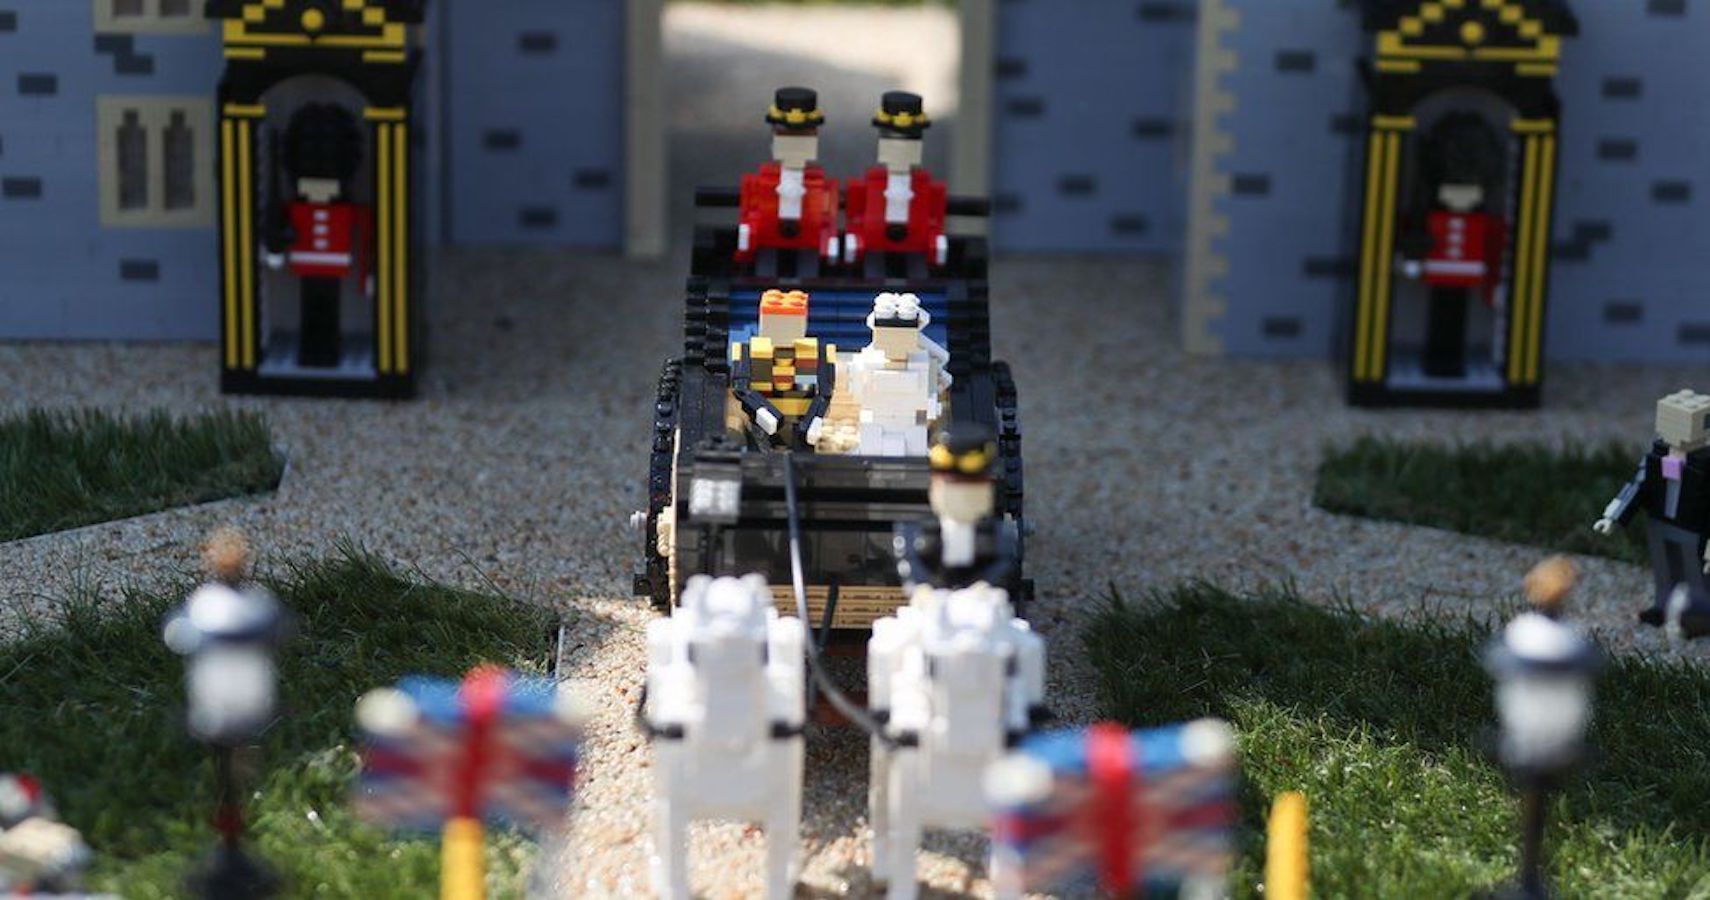 Legoland cria um "casamento real de Lego" em homenagem ao príncipe Harry e Meghan Markle